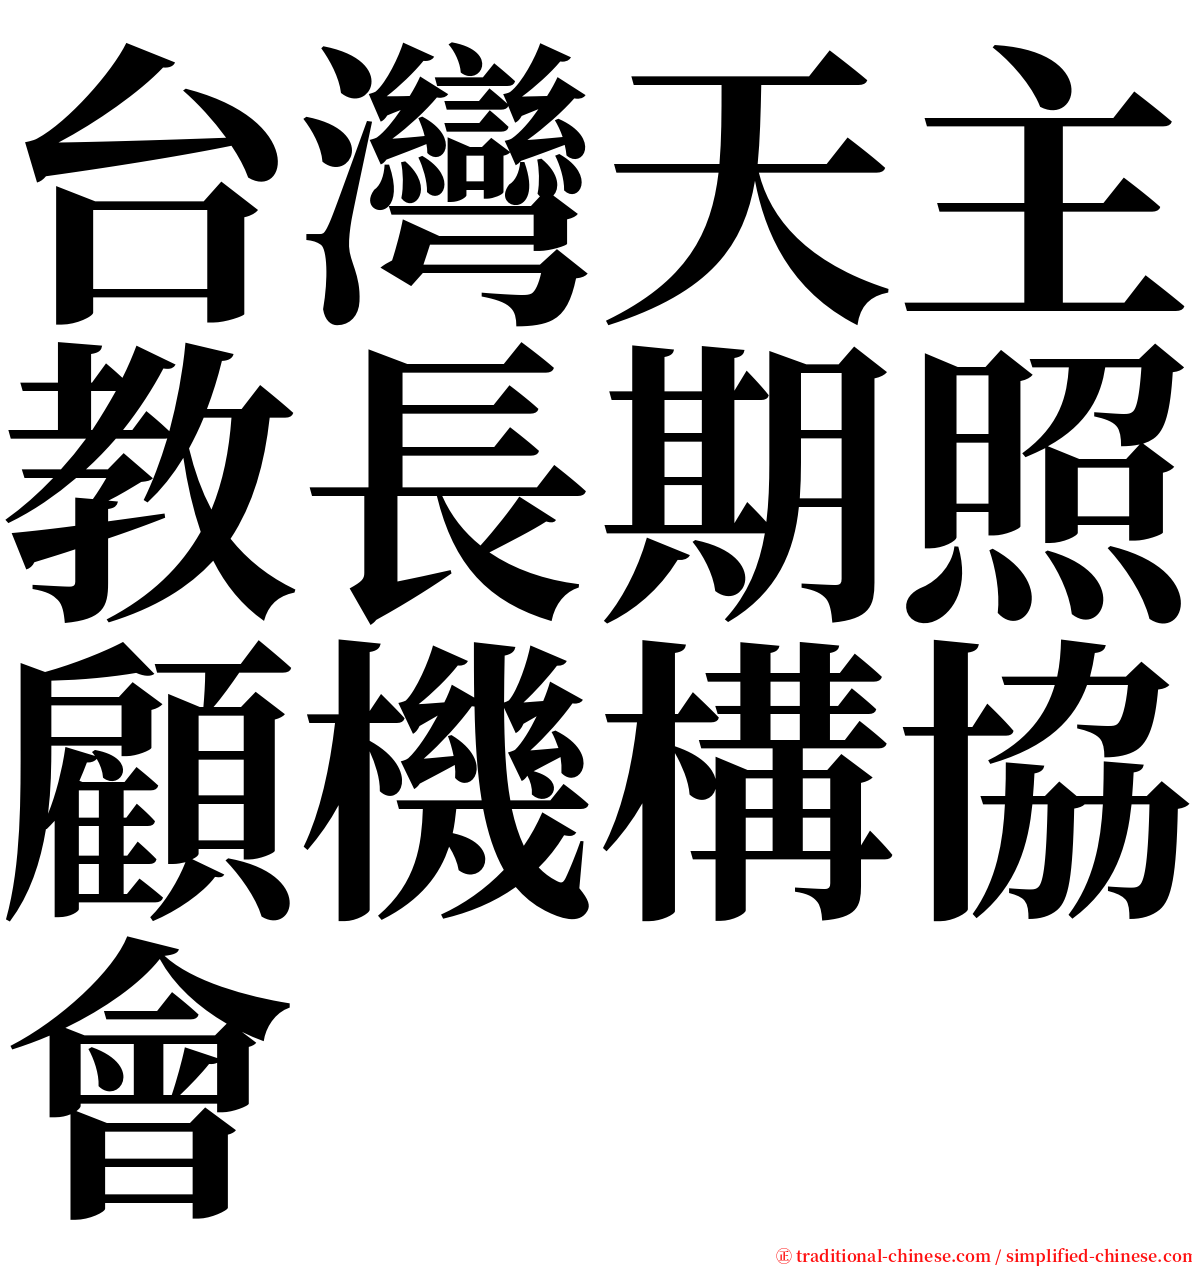 台灣天主教長期照顧機構協會 serif font